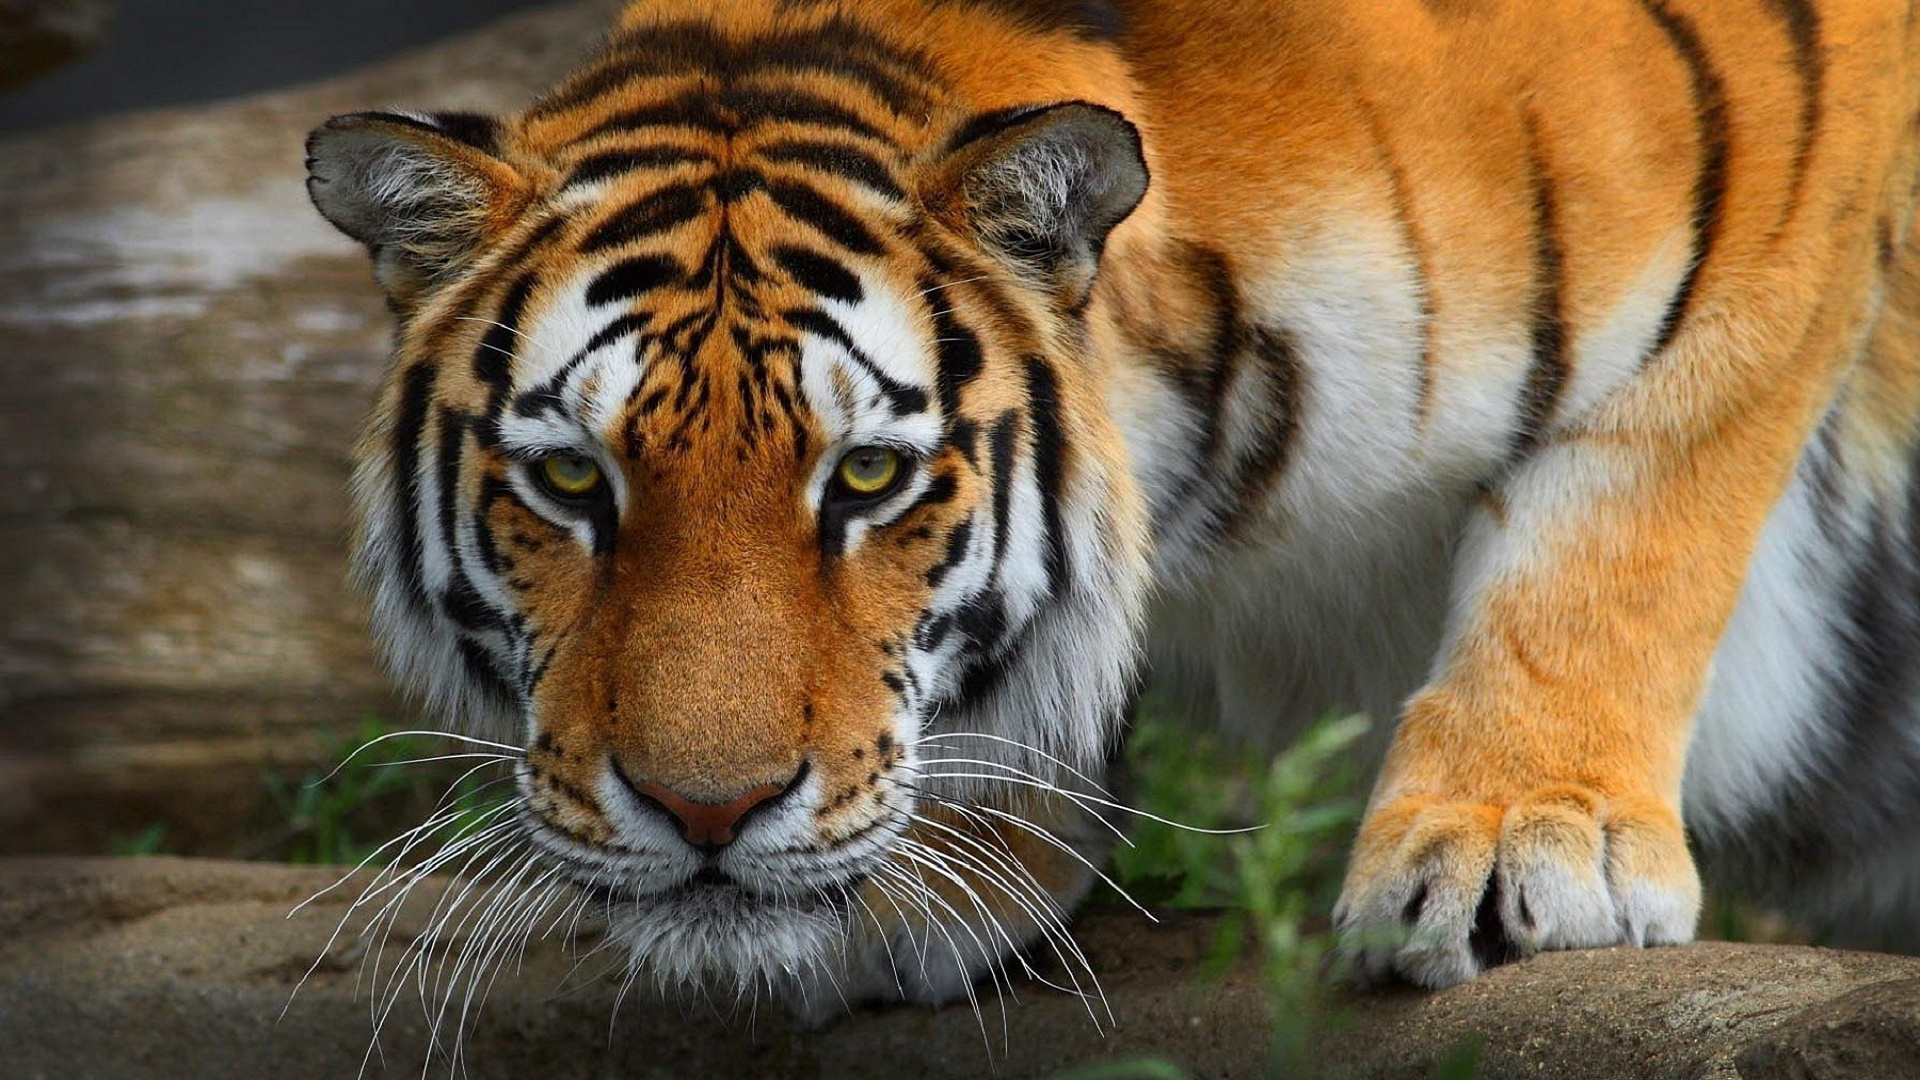 big, Cats, Tigers, Snout, Glance, Animals, Tiger Wallpaper